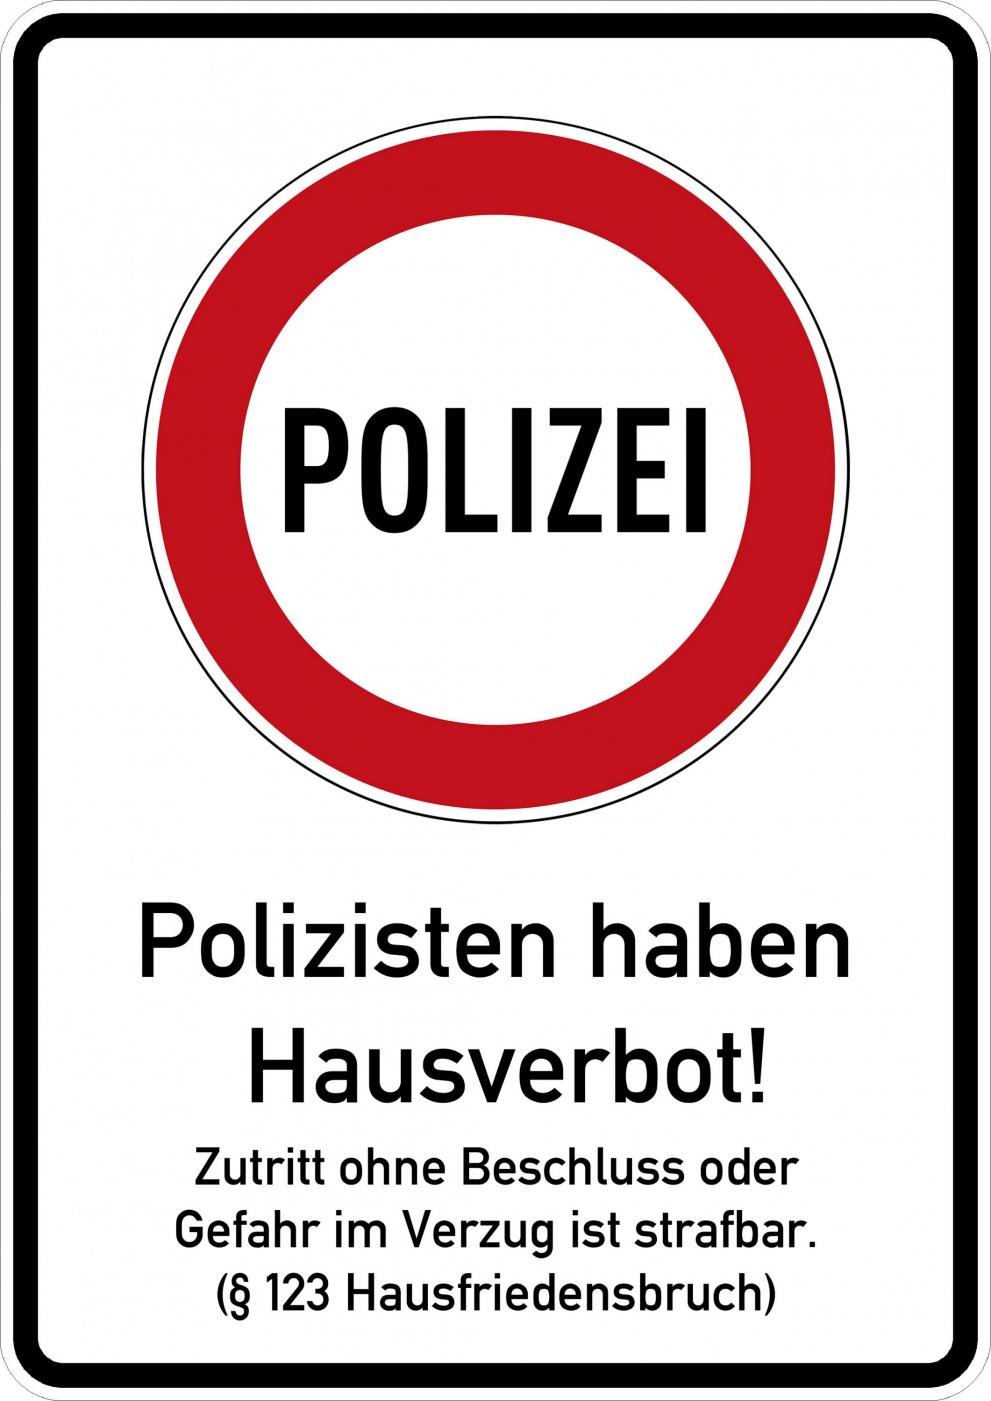 ''POLIZEI'' in Verbotsschild + ''Polizisten haben Hausverbot'' und Hinweis auf § 123 Hausfriedensbruch - 1x DinA4.jpg